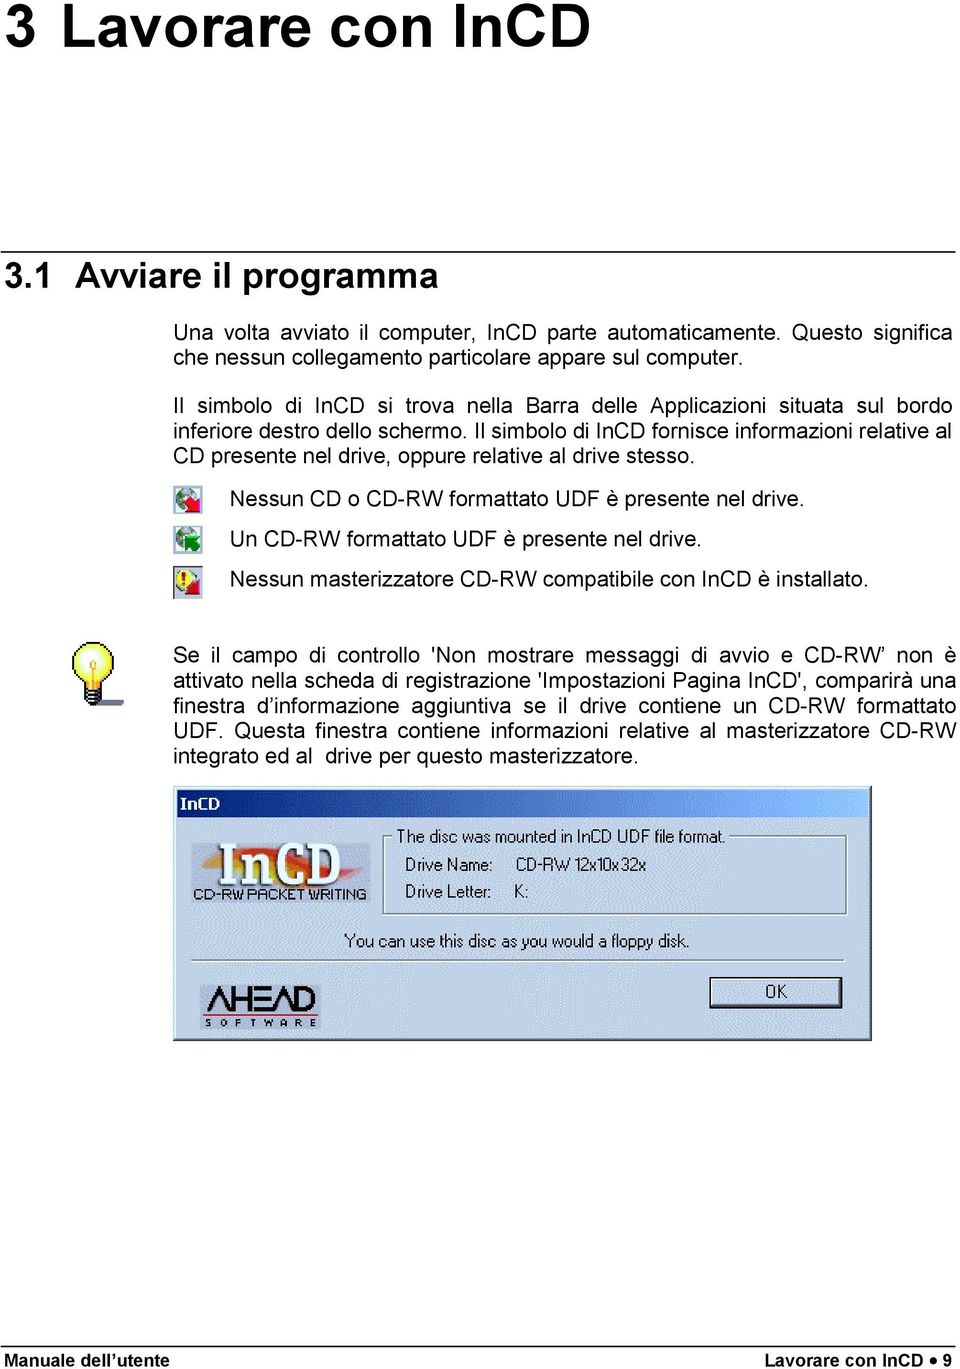 Il simbolo di InCD fornisce informazioni relative al CD presente nel drive, oppure relative al drive stesso. Nessun CD o CD-RW formattato UDF è presente nel drive.